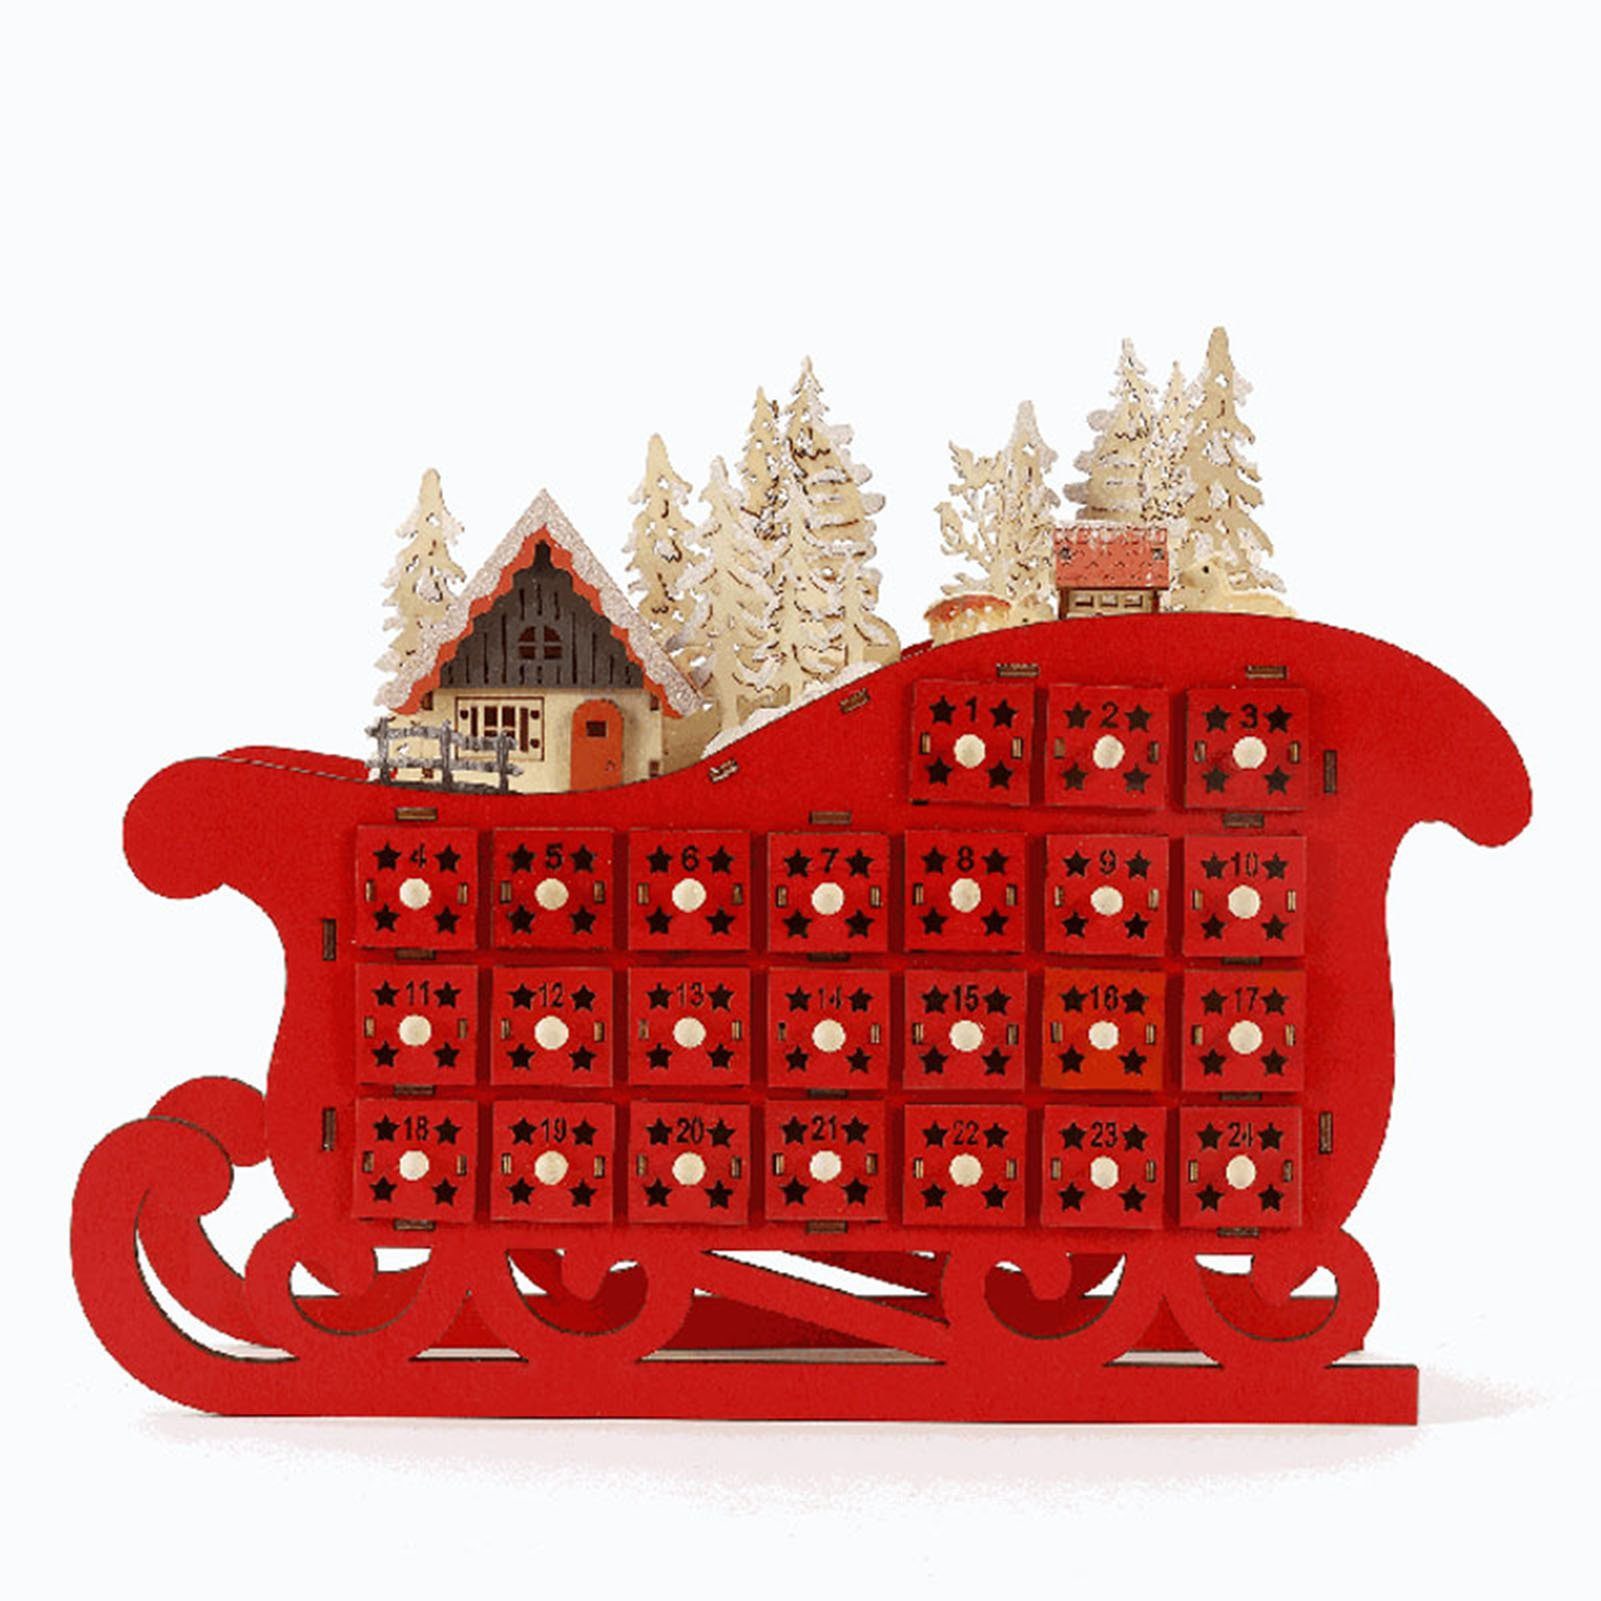 Blusmart Adventskalender 24-Tage-Weihnachts-Countdown-Kalender In Roter Schlittenform